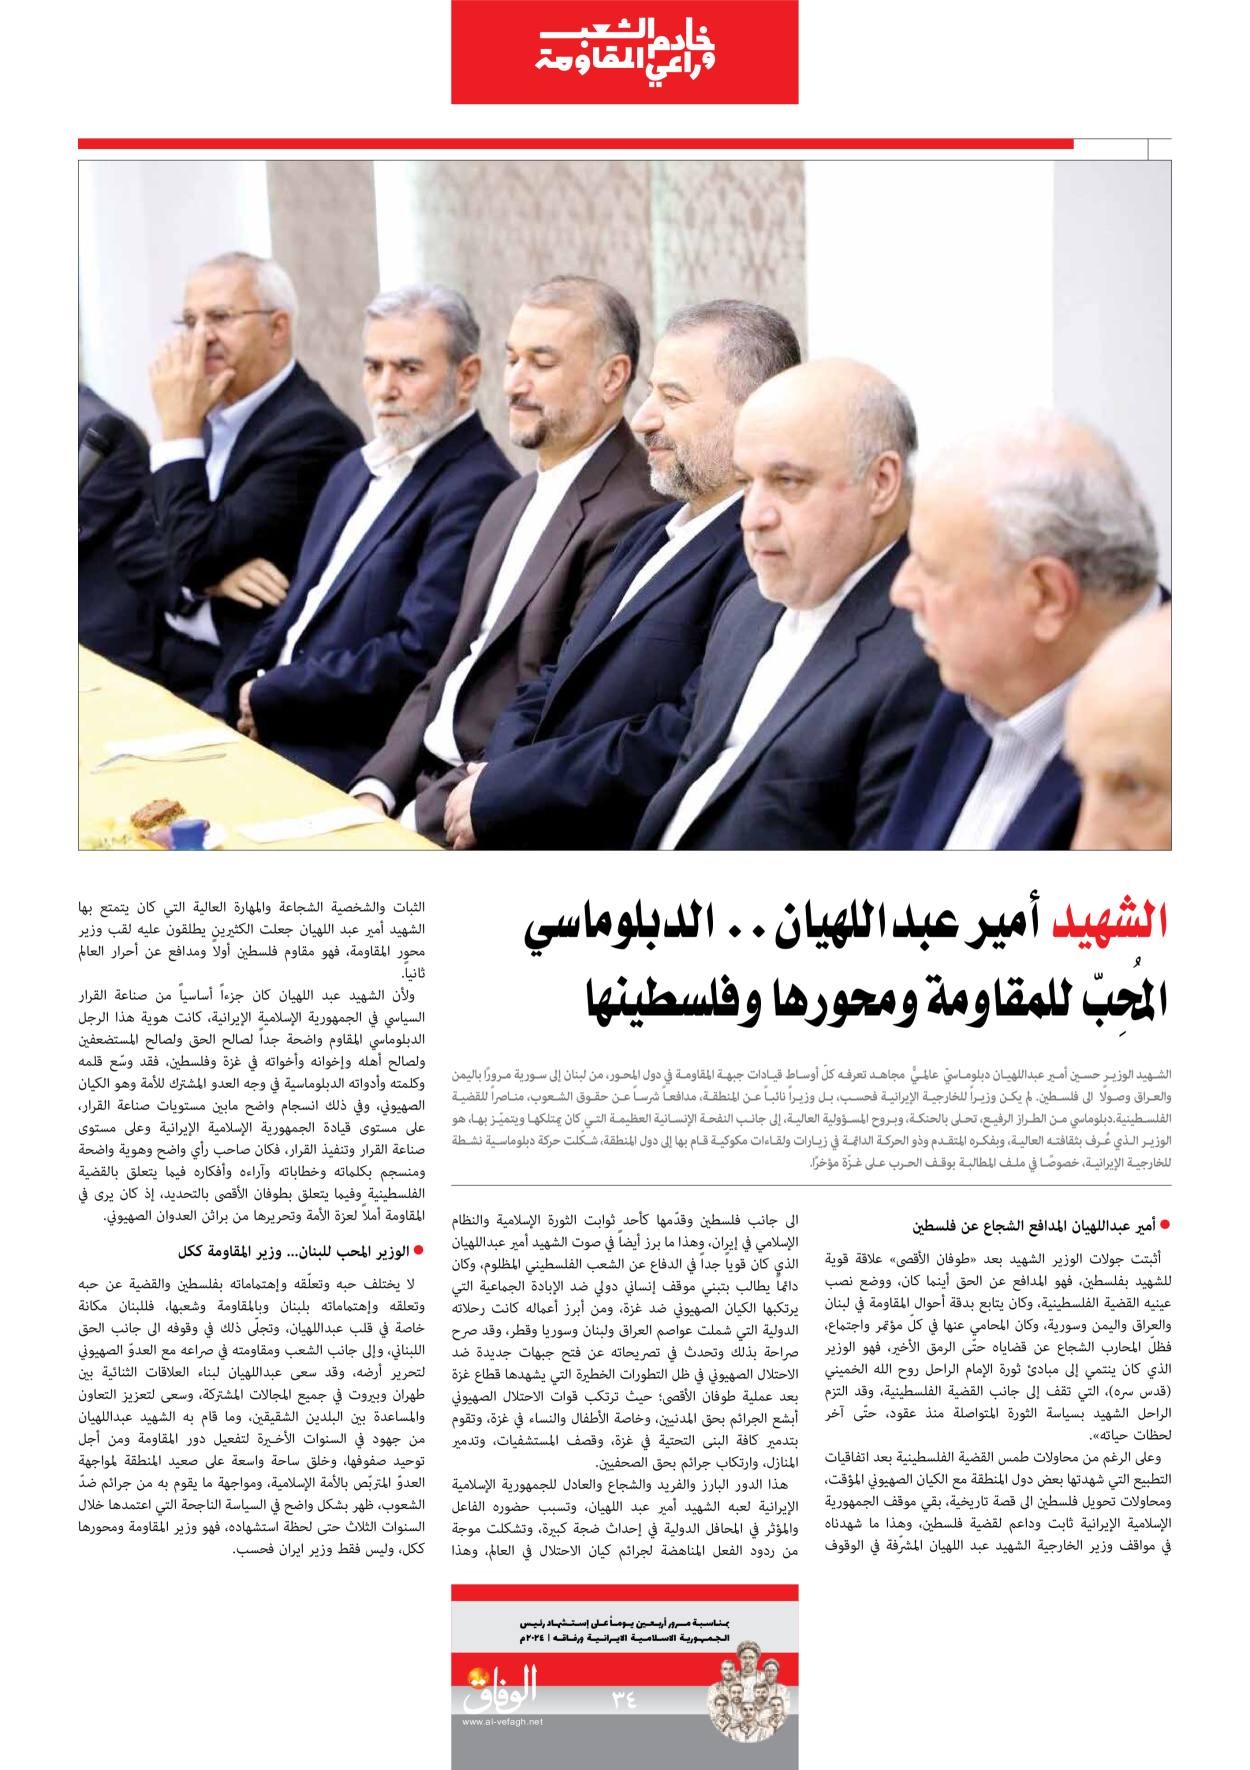 صحیفة ایران الدولیة الوفاق - ملحق ویژه نامه چهلم شهید رییسی - ٢٩ يونيو ٢٠٢٤ - الصفحة ۳٤